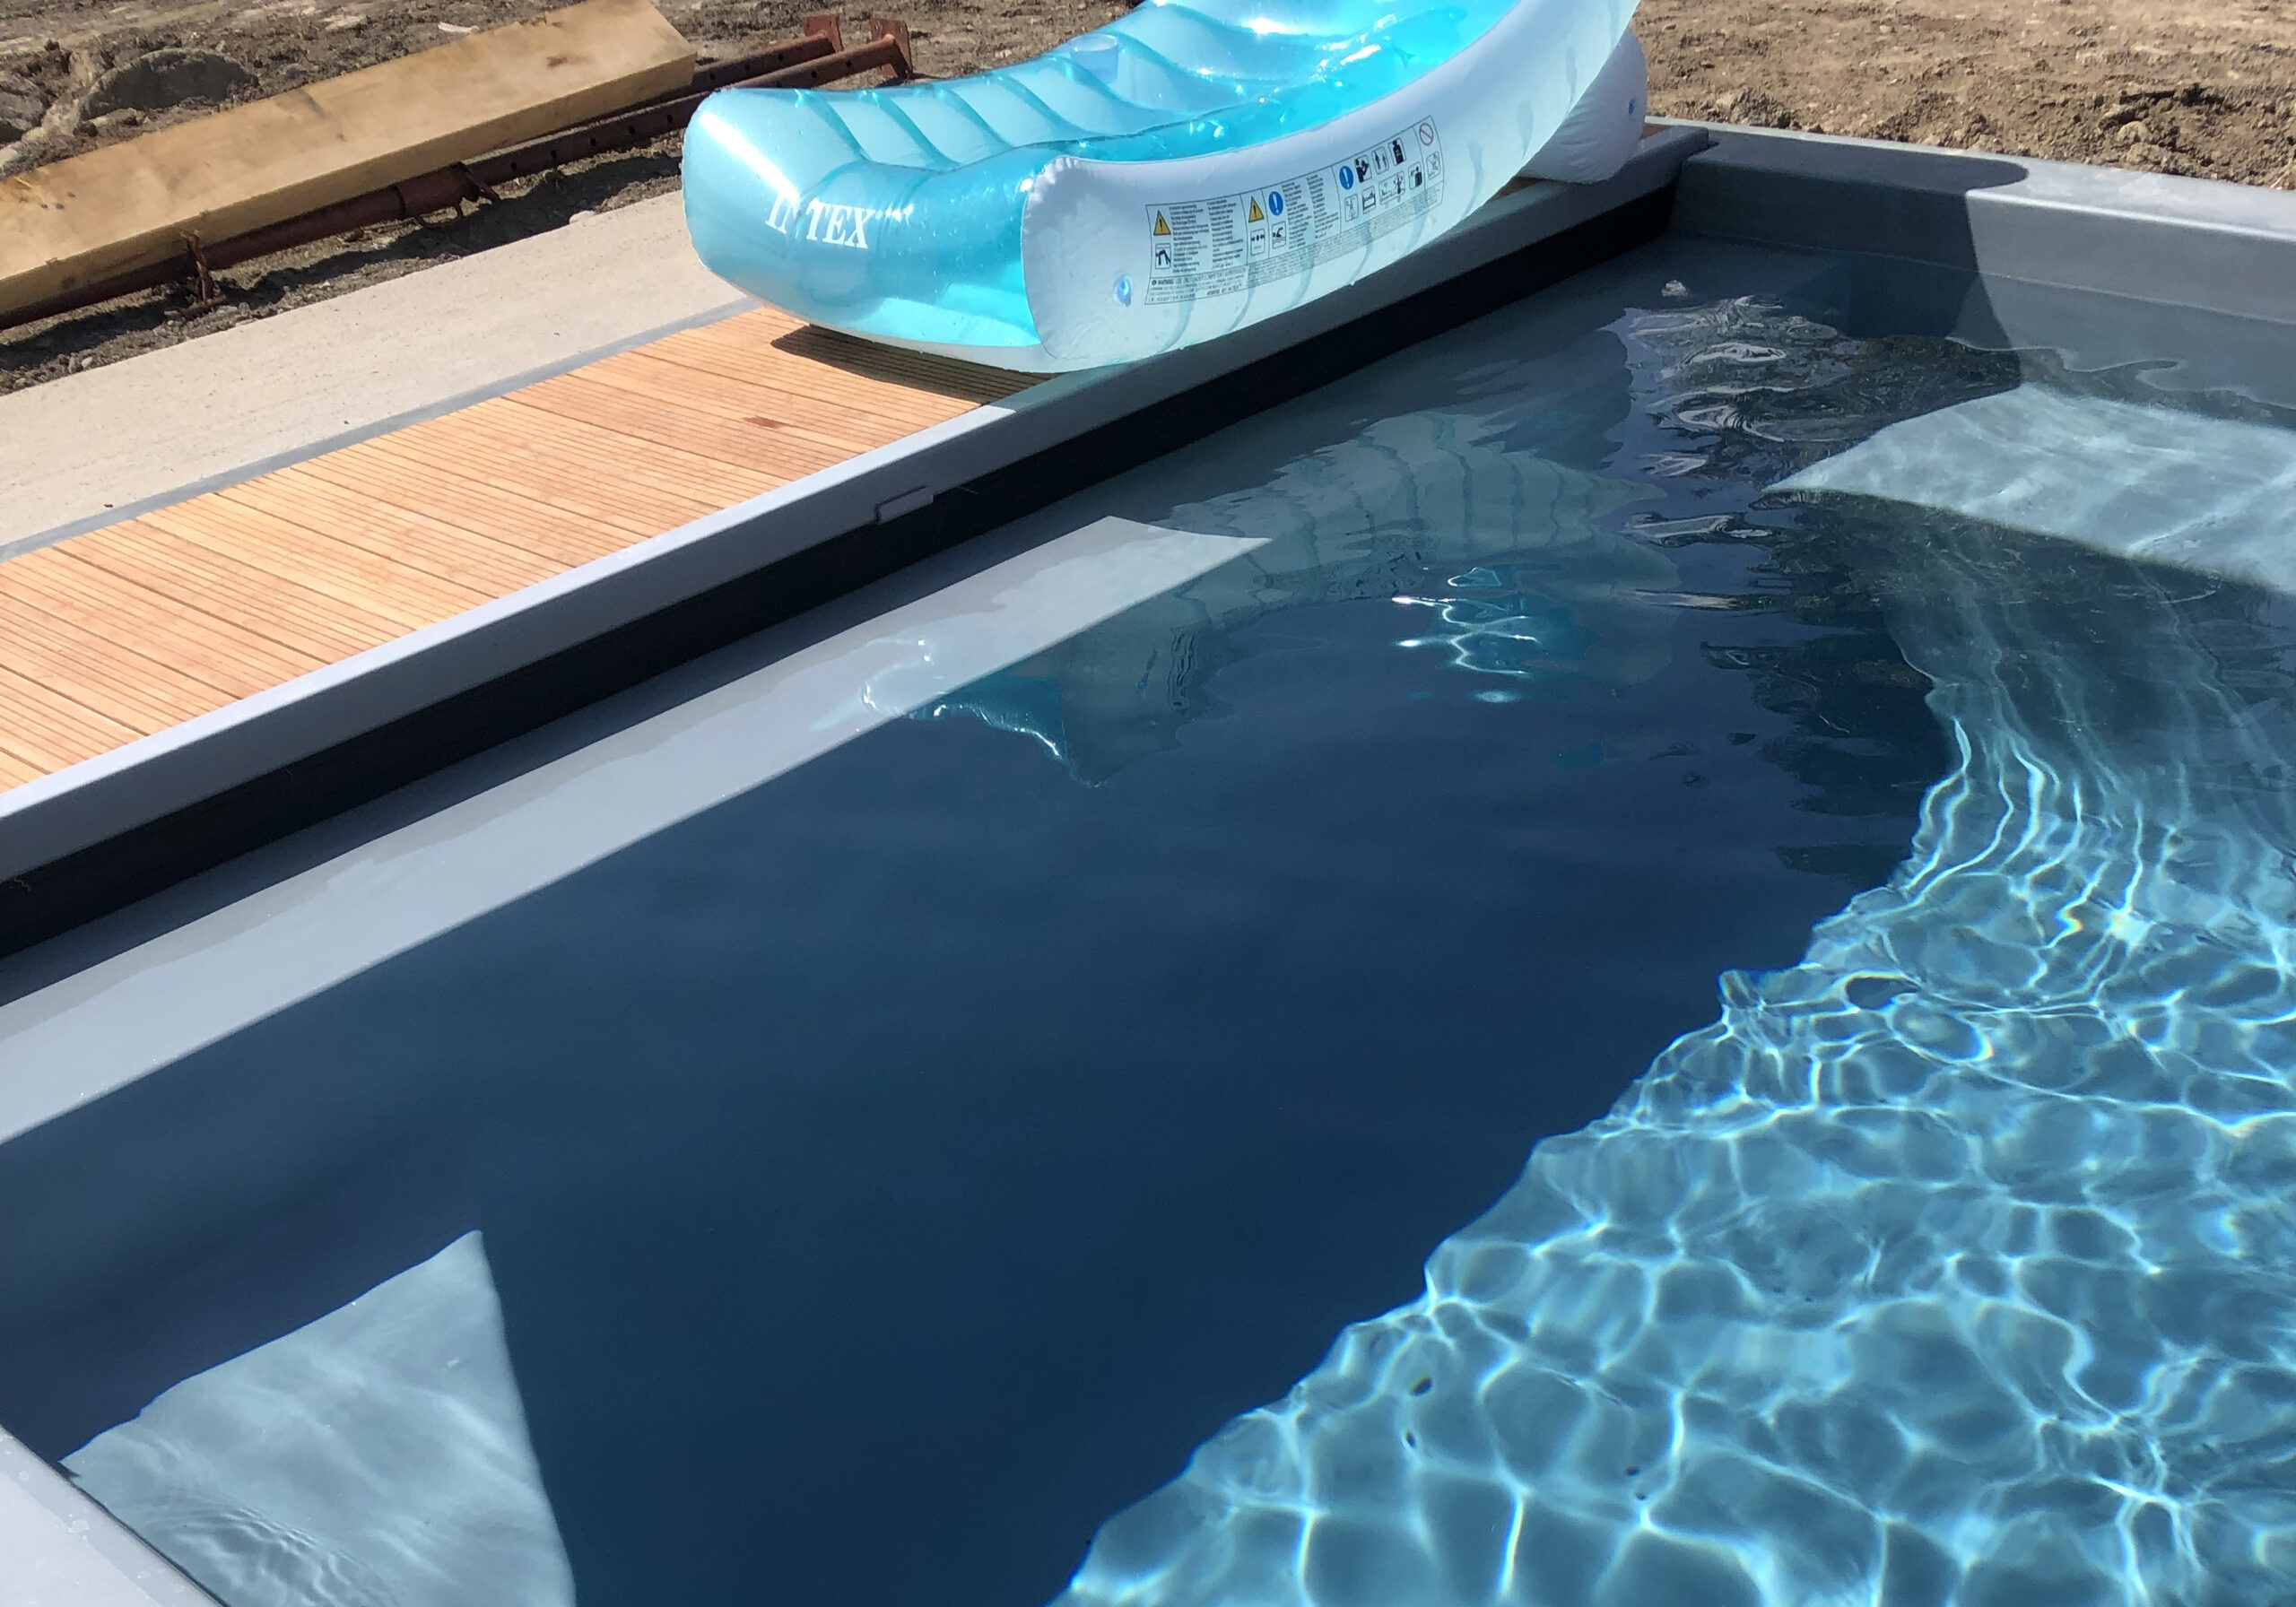 Installation d'une piscine coque Freedom avec volet integré à Tarbes